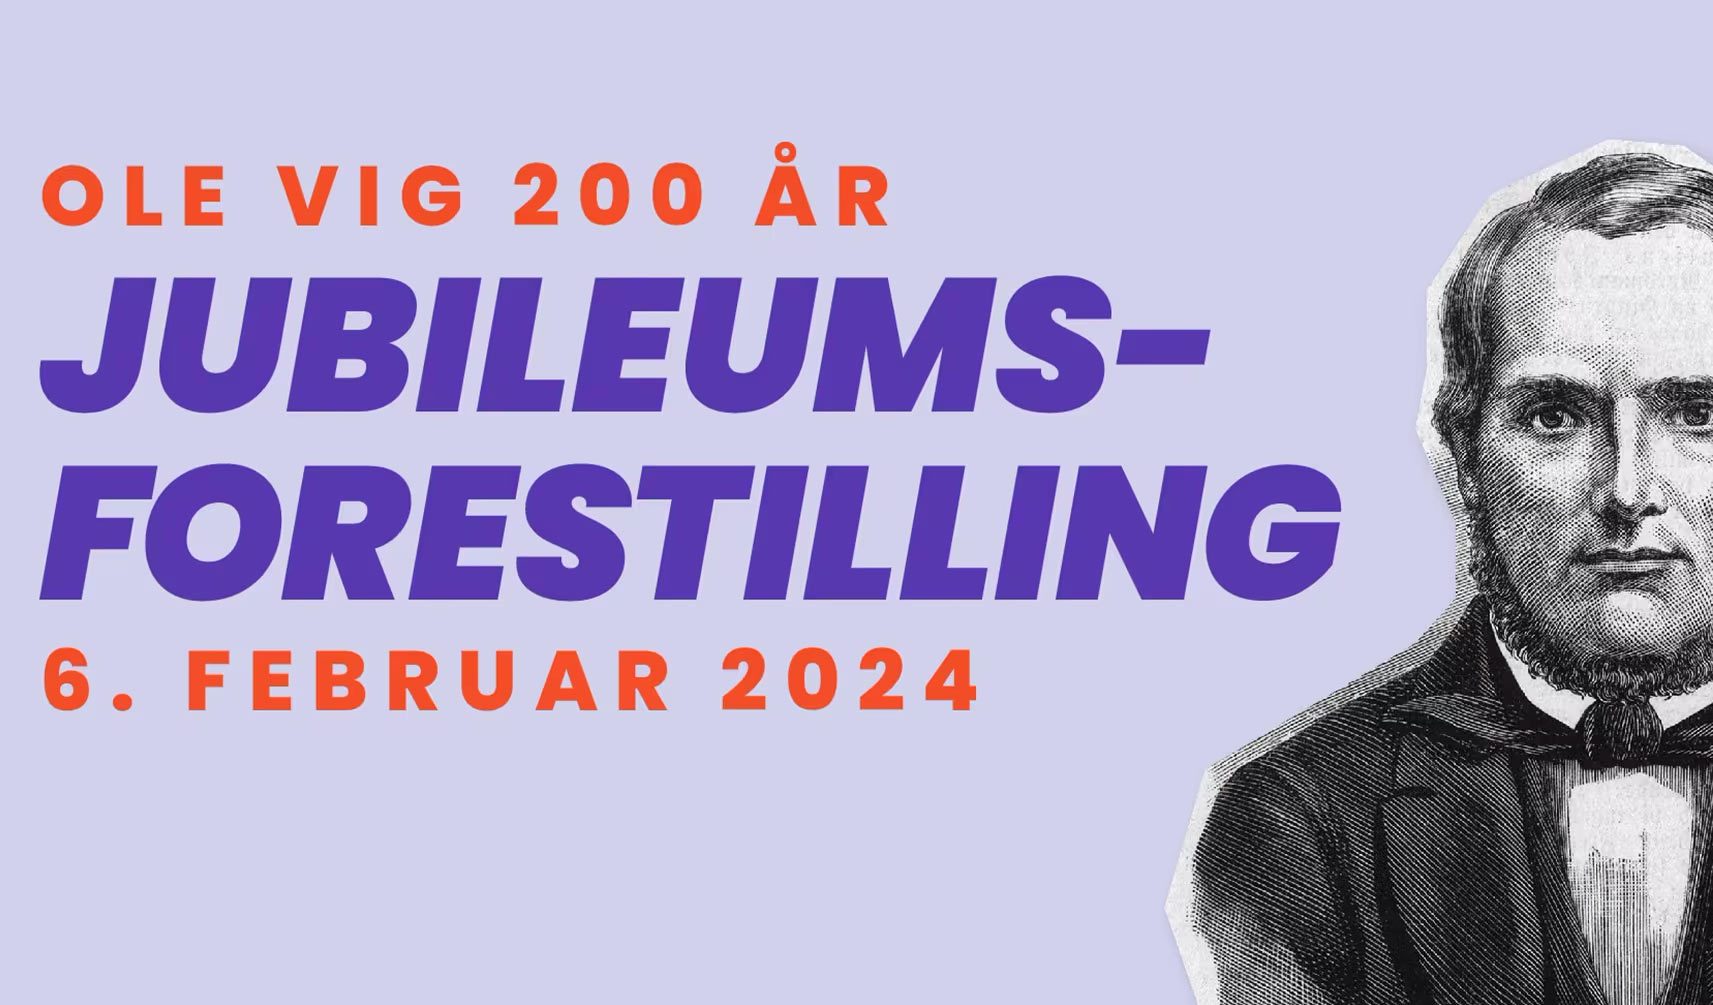 Ole Vig 200-års jubileum 6. februar 2024